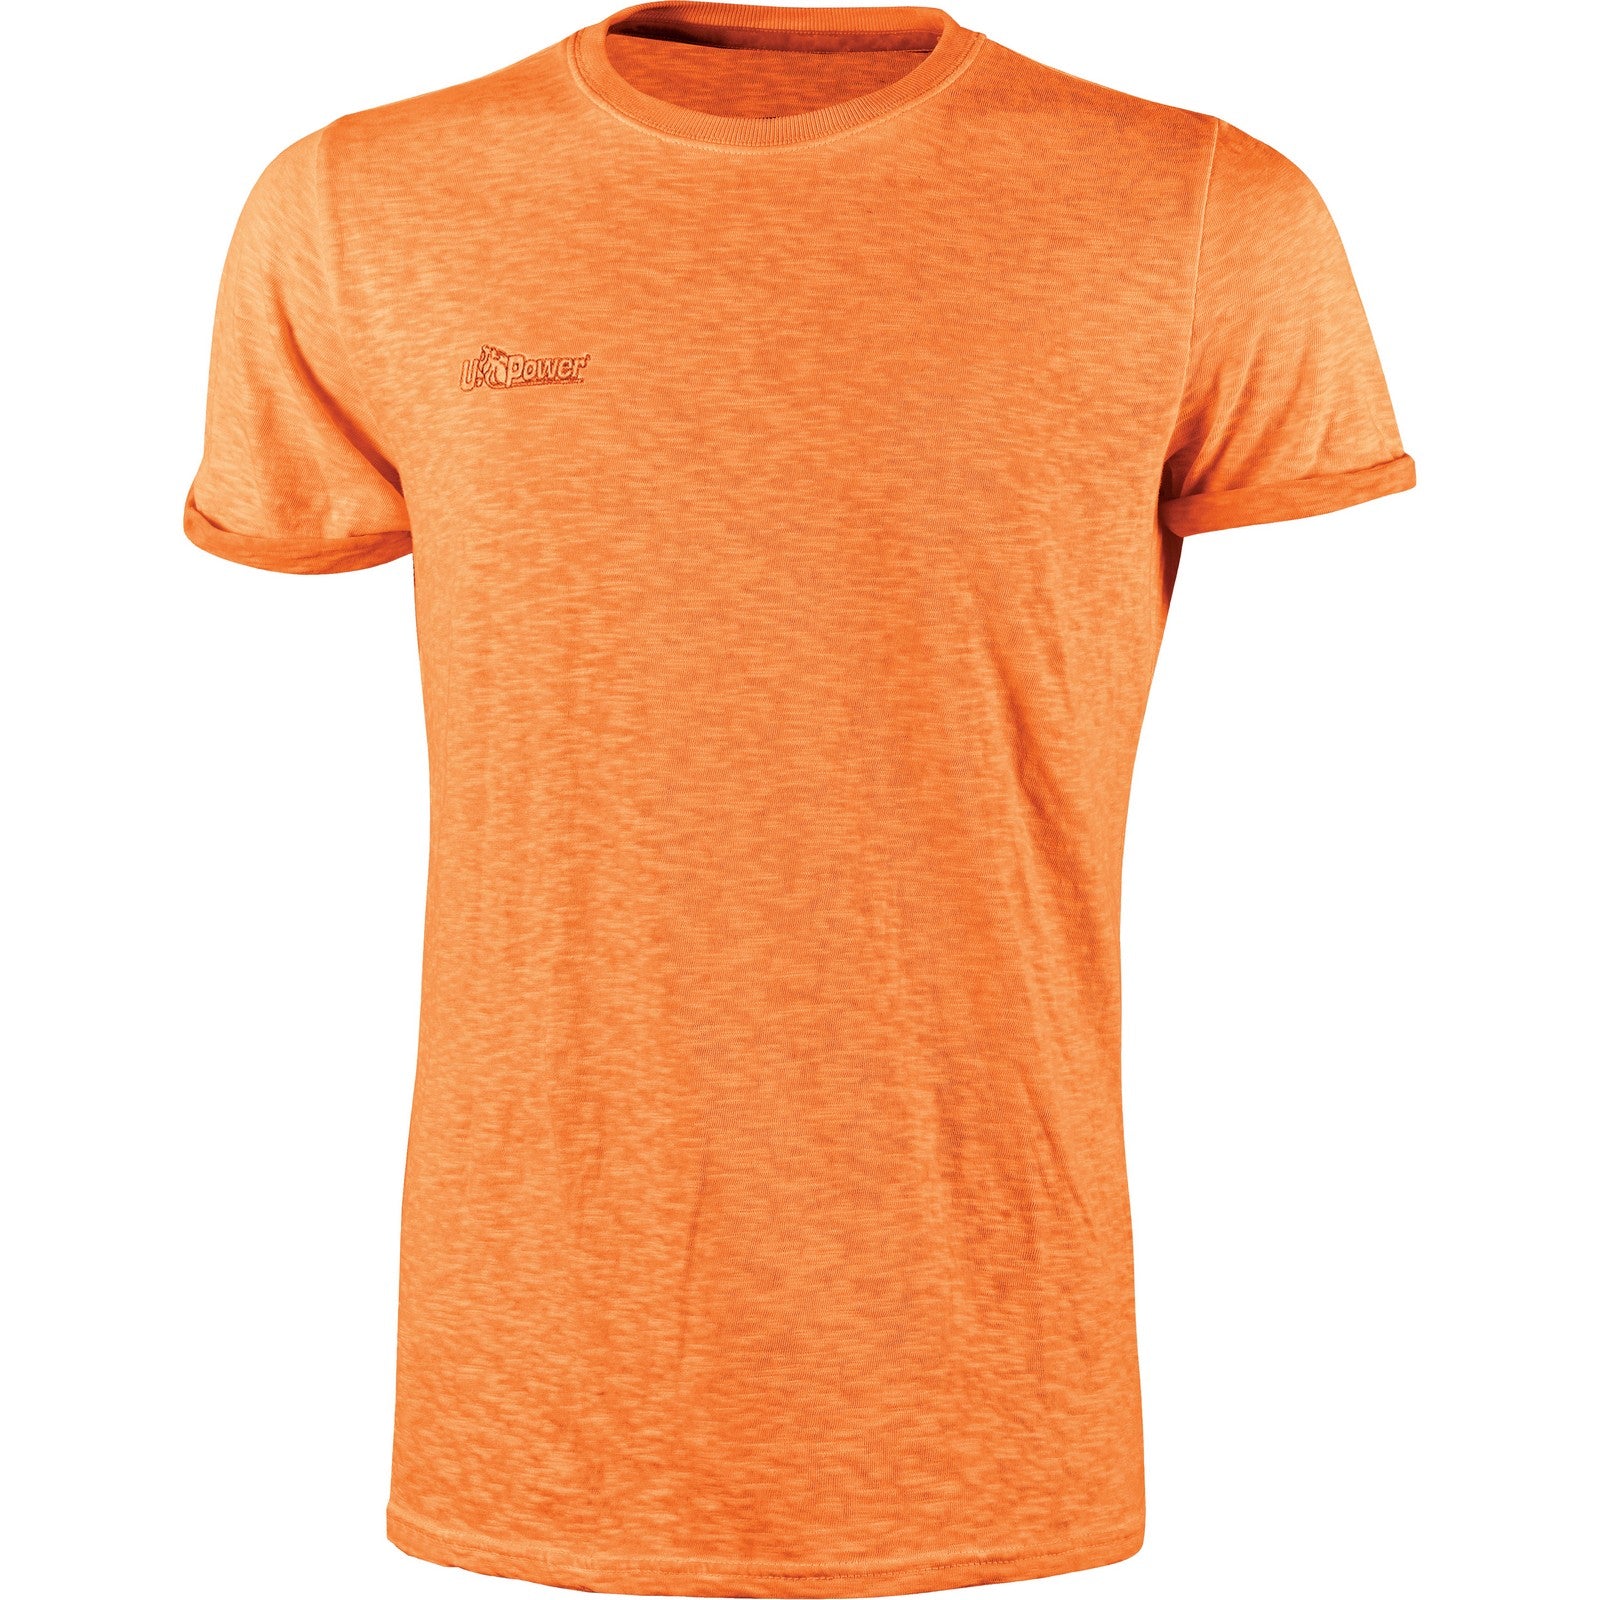 U-Power T-Shirt Fluo Arancio  tagliaM